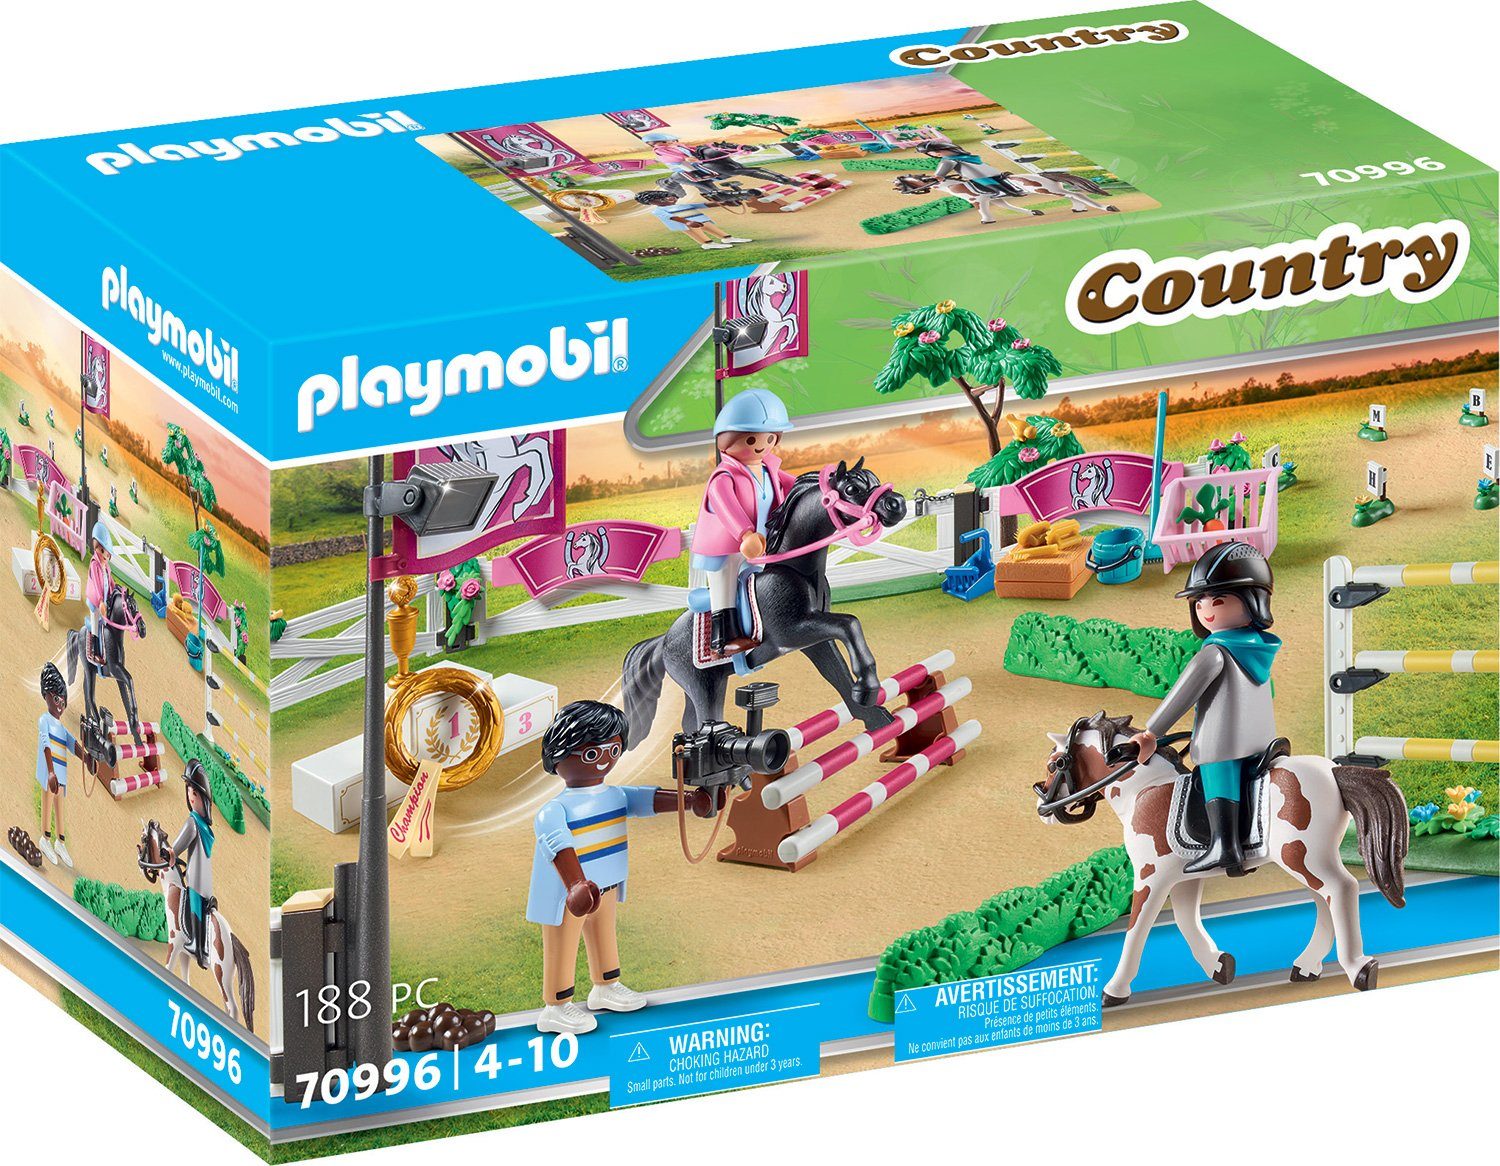 Playmobil® Konstruktions-Spielset Reitturnier (70996), Country, (188 St),  Made in Germany, Mit 2 Pferden, 2 Halfter mit Zügel, 2 Sättel, u.v.m.